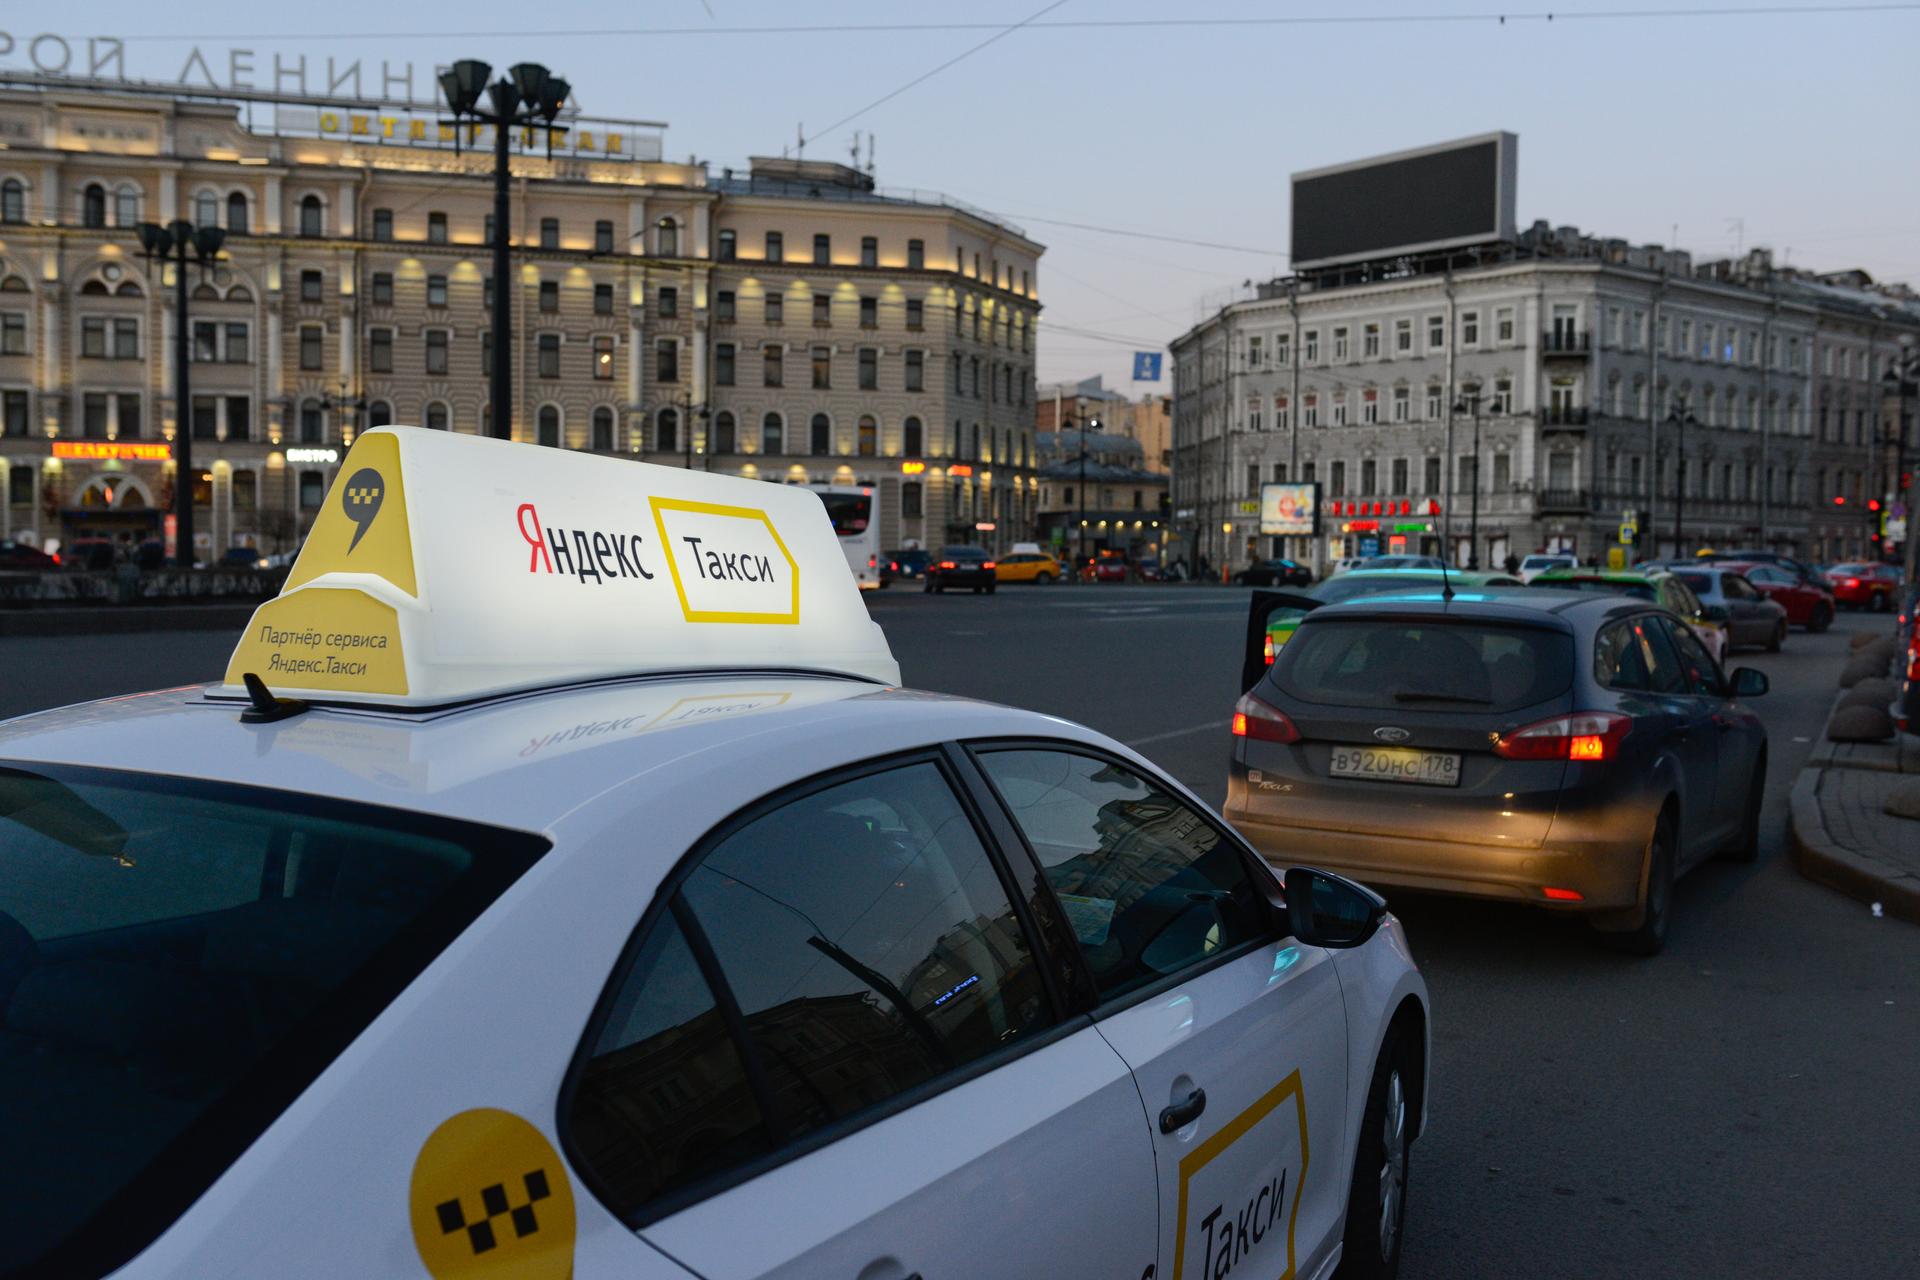 Яндекс такси Петербург